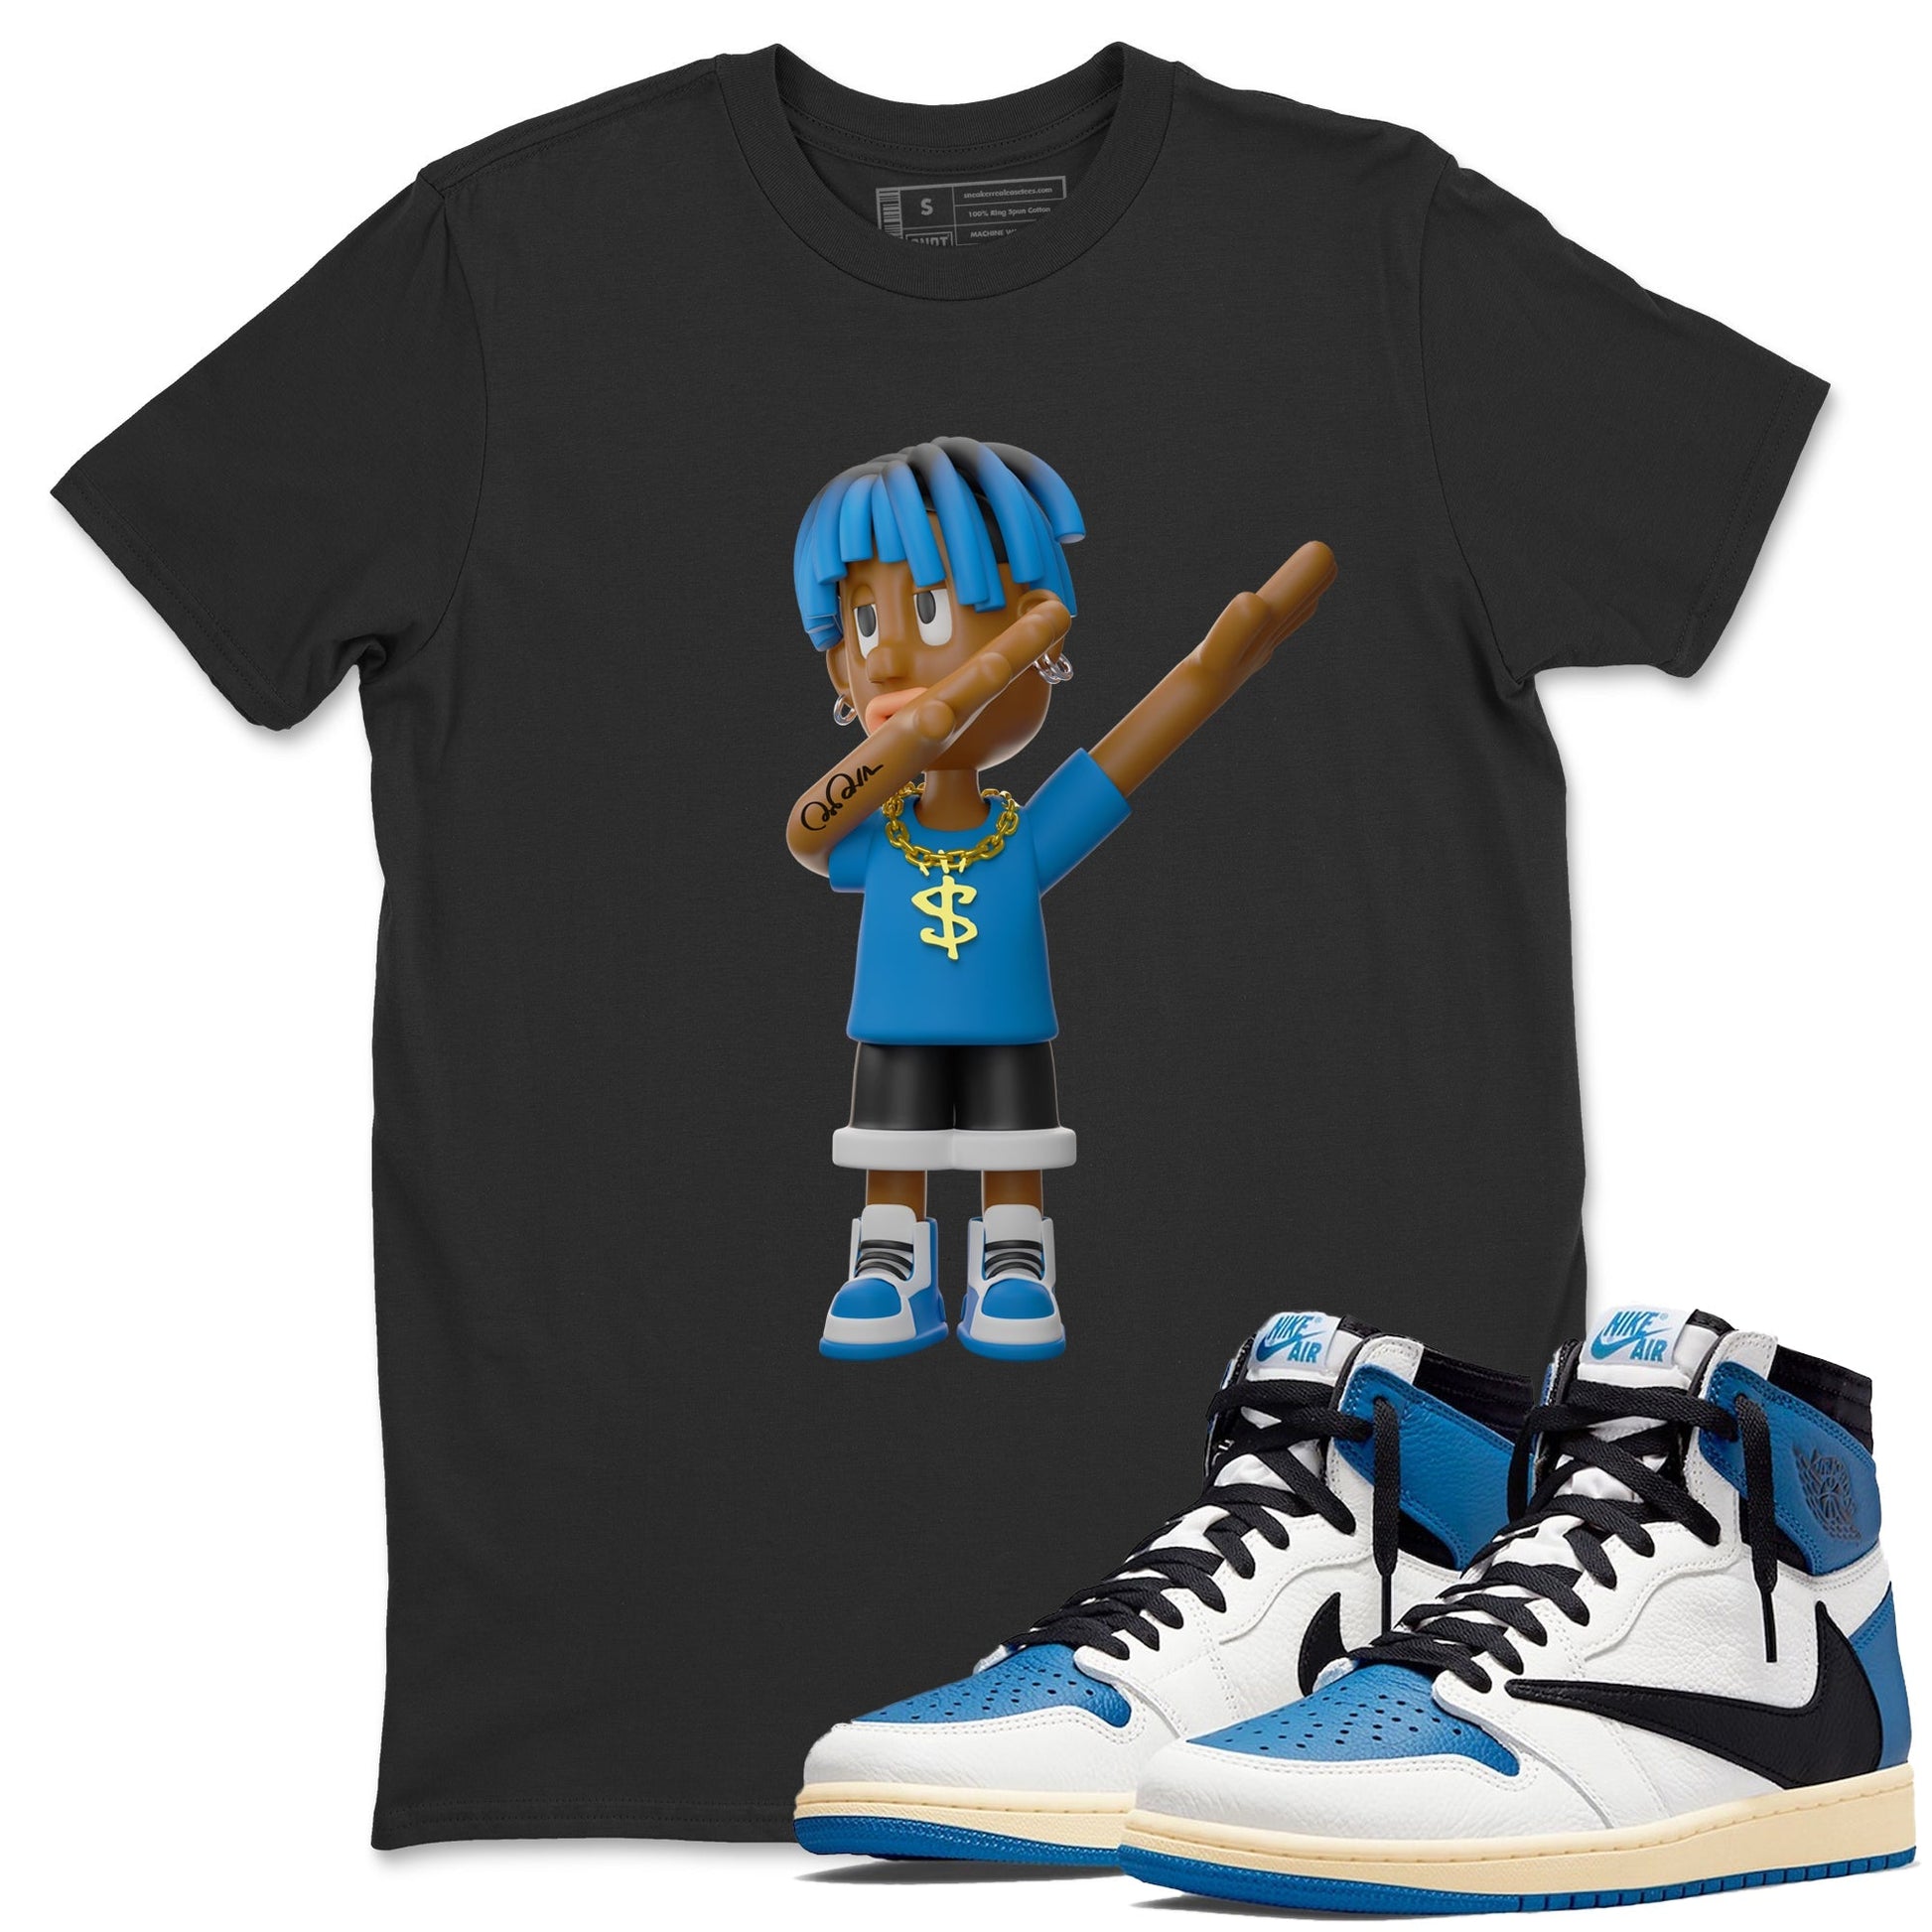 Air Jordan 1 Travis Scott Fragment Sneaker Tees Drip Gear Zone Get'em Boy Sneaker Tees AJ1 OG High Travis Scott Fragment Shirt Unisex Shirts Black 1